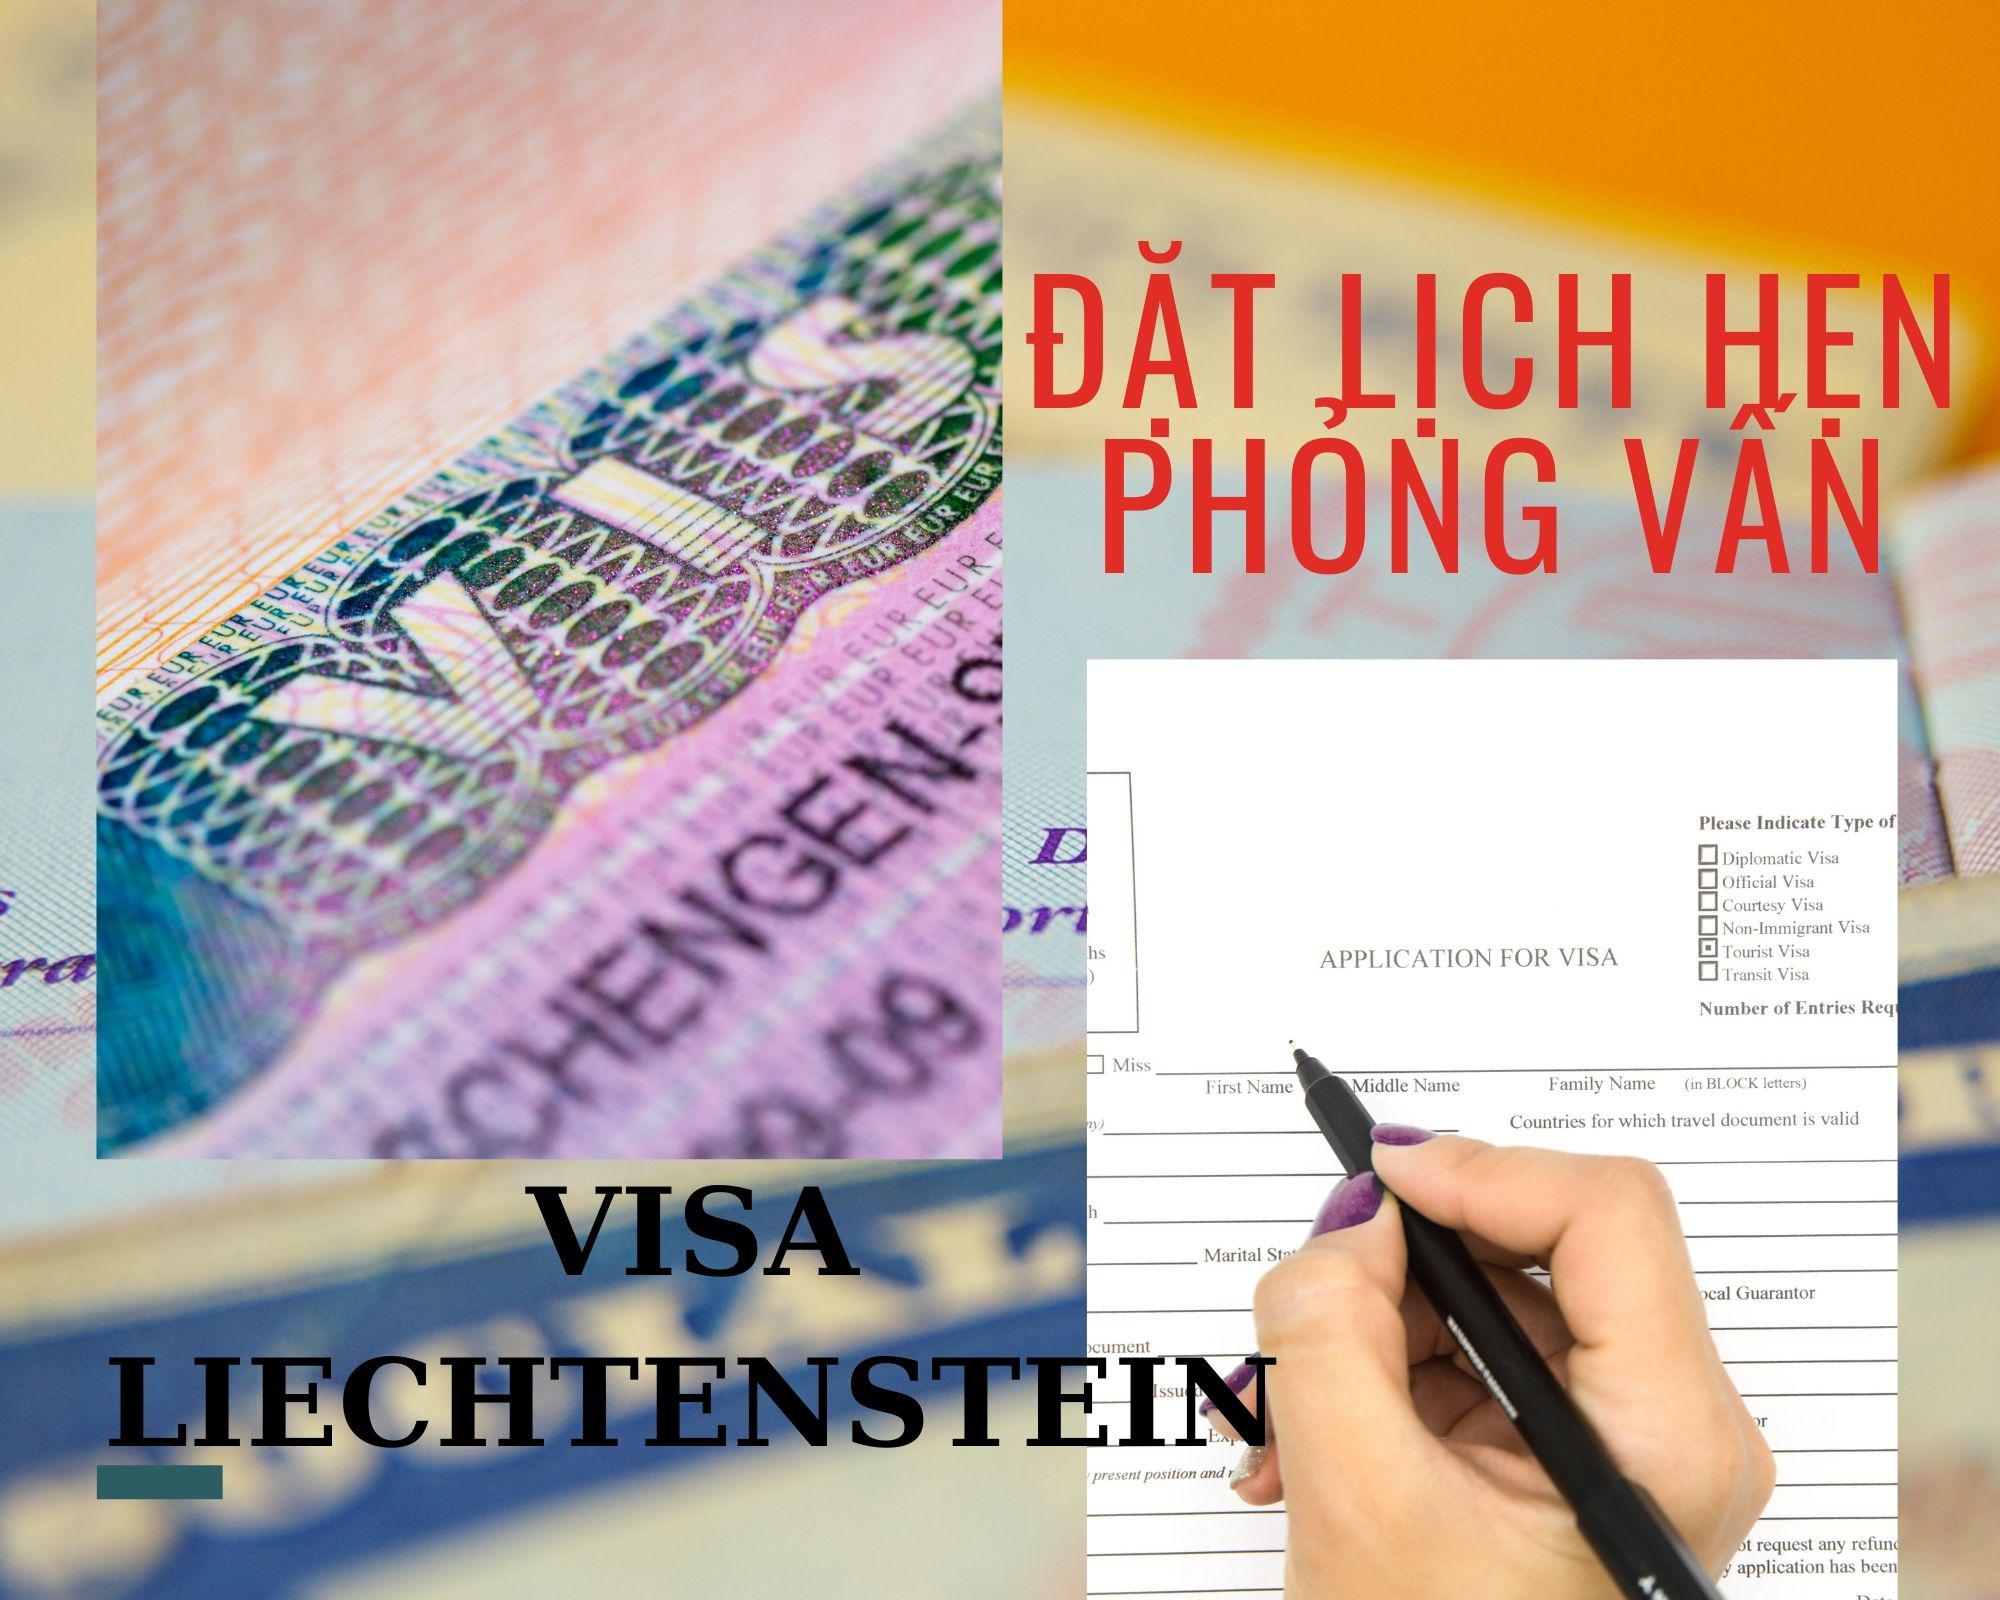 Dịch vụ đặt lịch hẹn phỏng vấn visa Liechteinstein